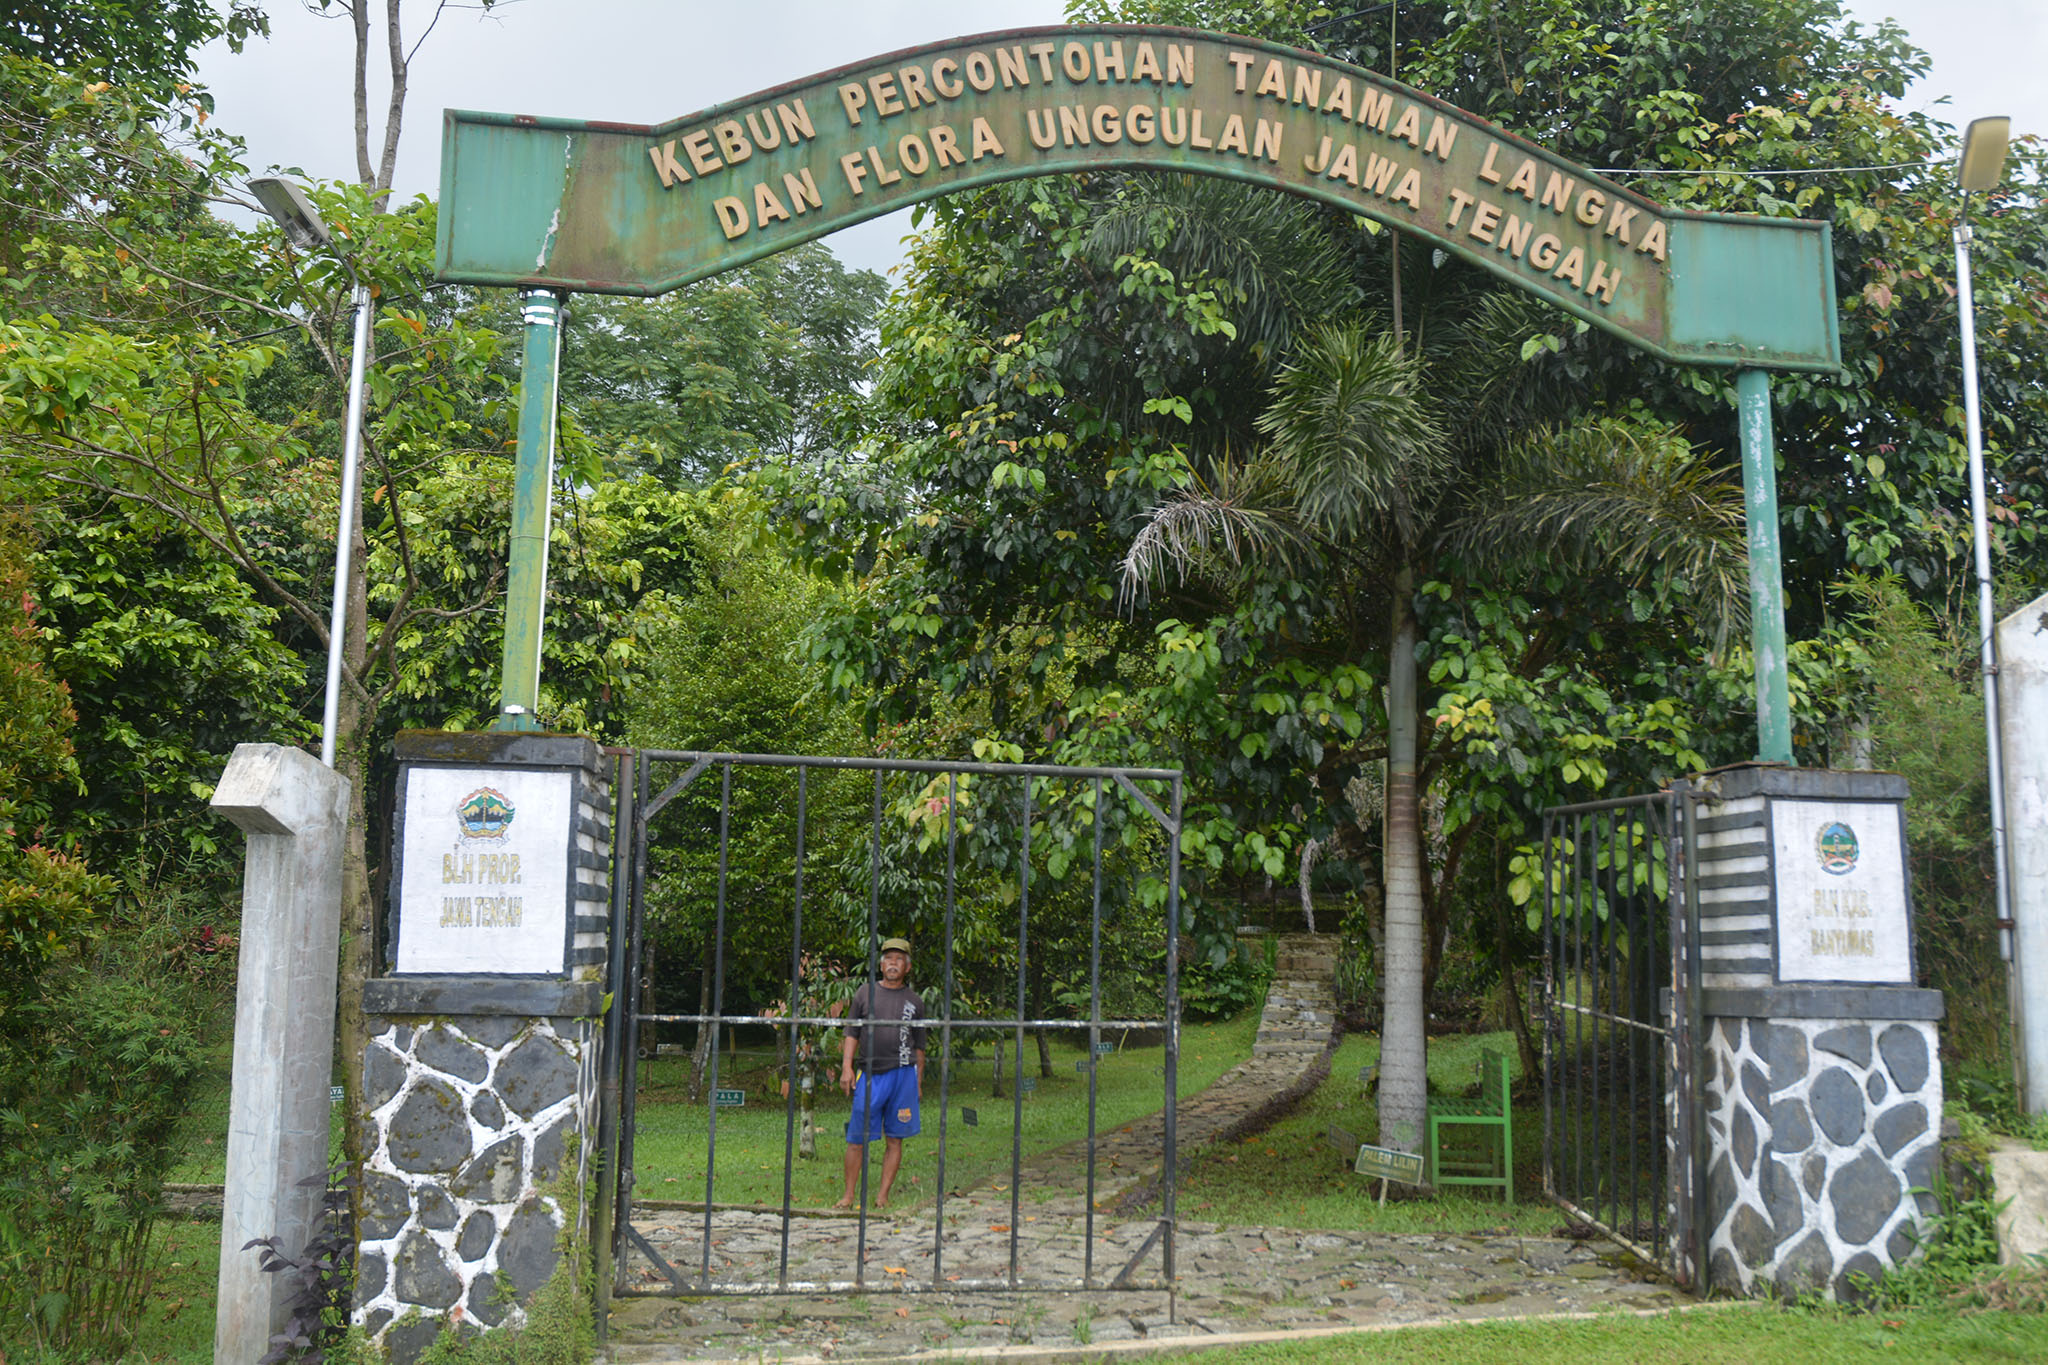 Gerbang Taman Keanekaragaman Hayati (Kehati) yang berada di Desa Kemutug Lor, Baturraden, Banyumas. Foto - L Darmawan:Mongabay Indonesia